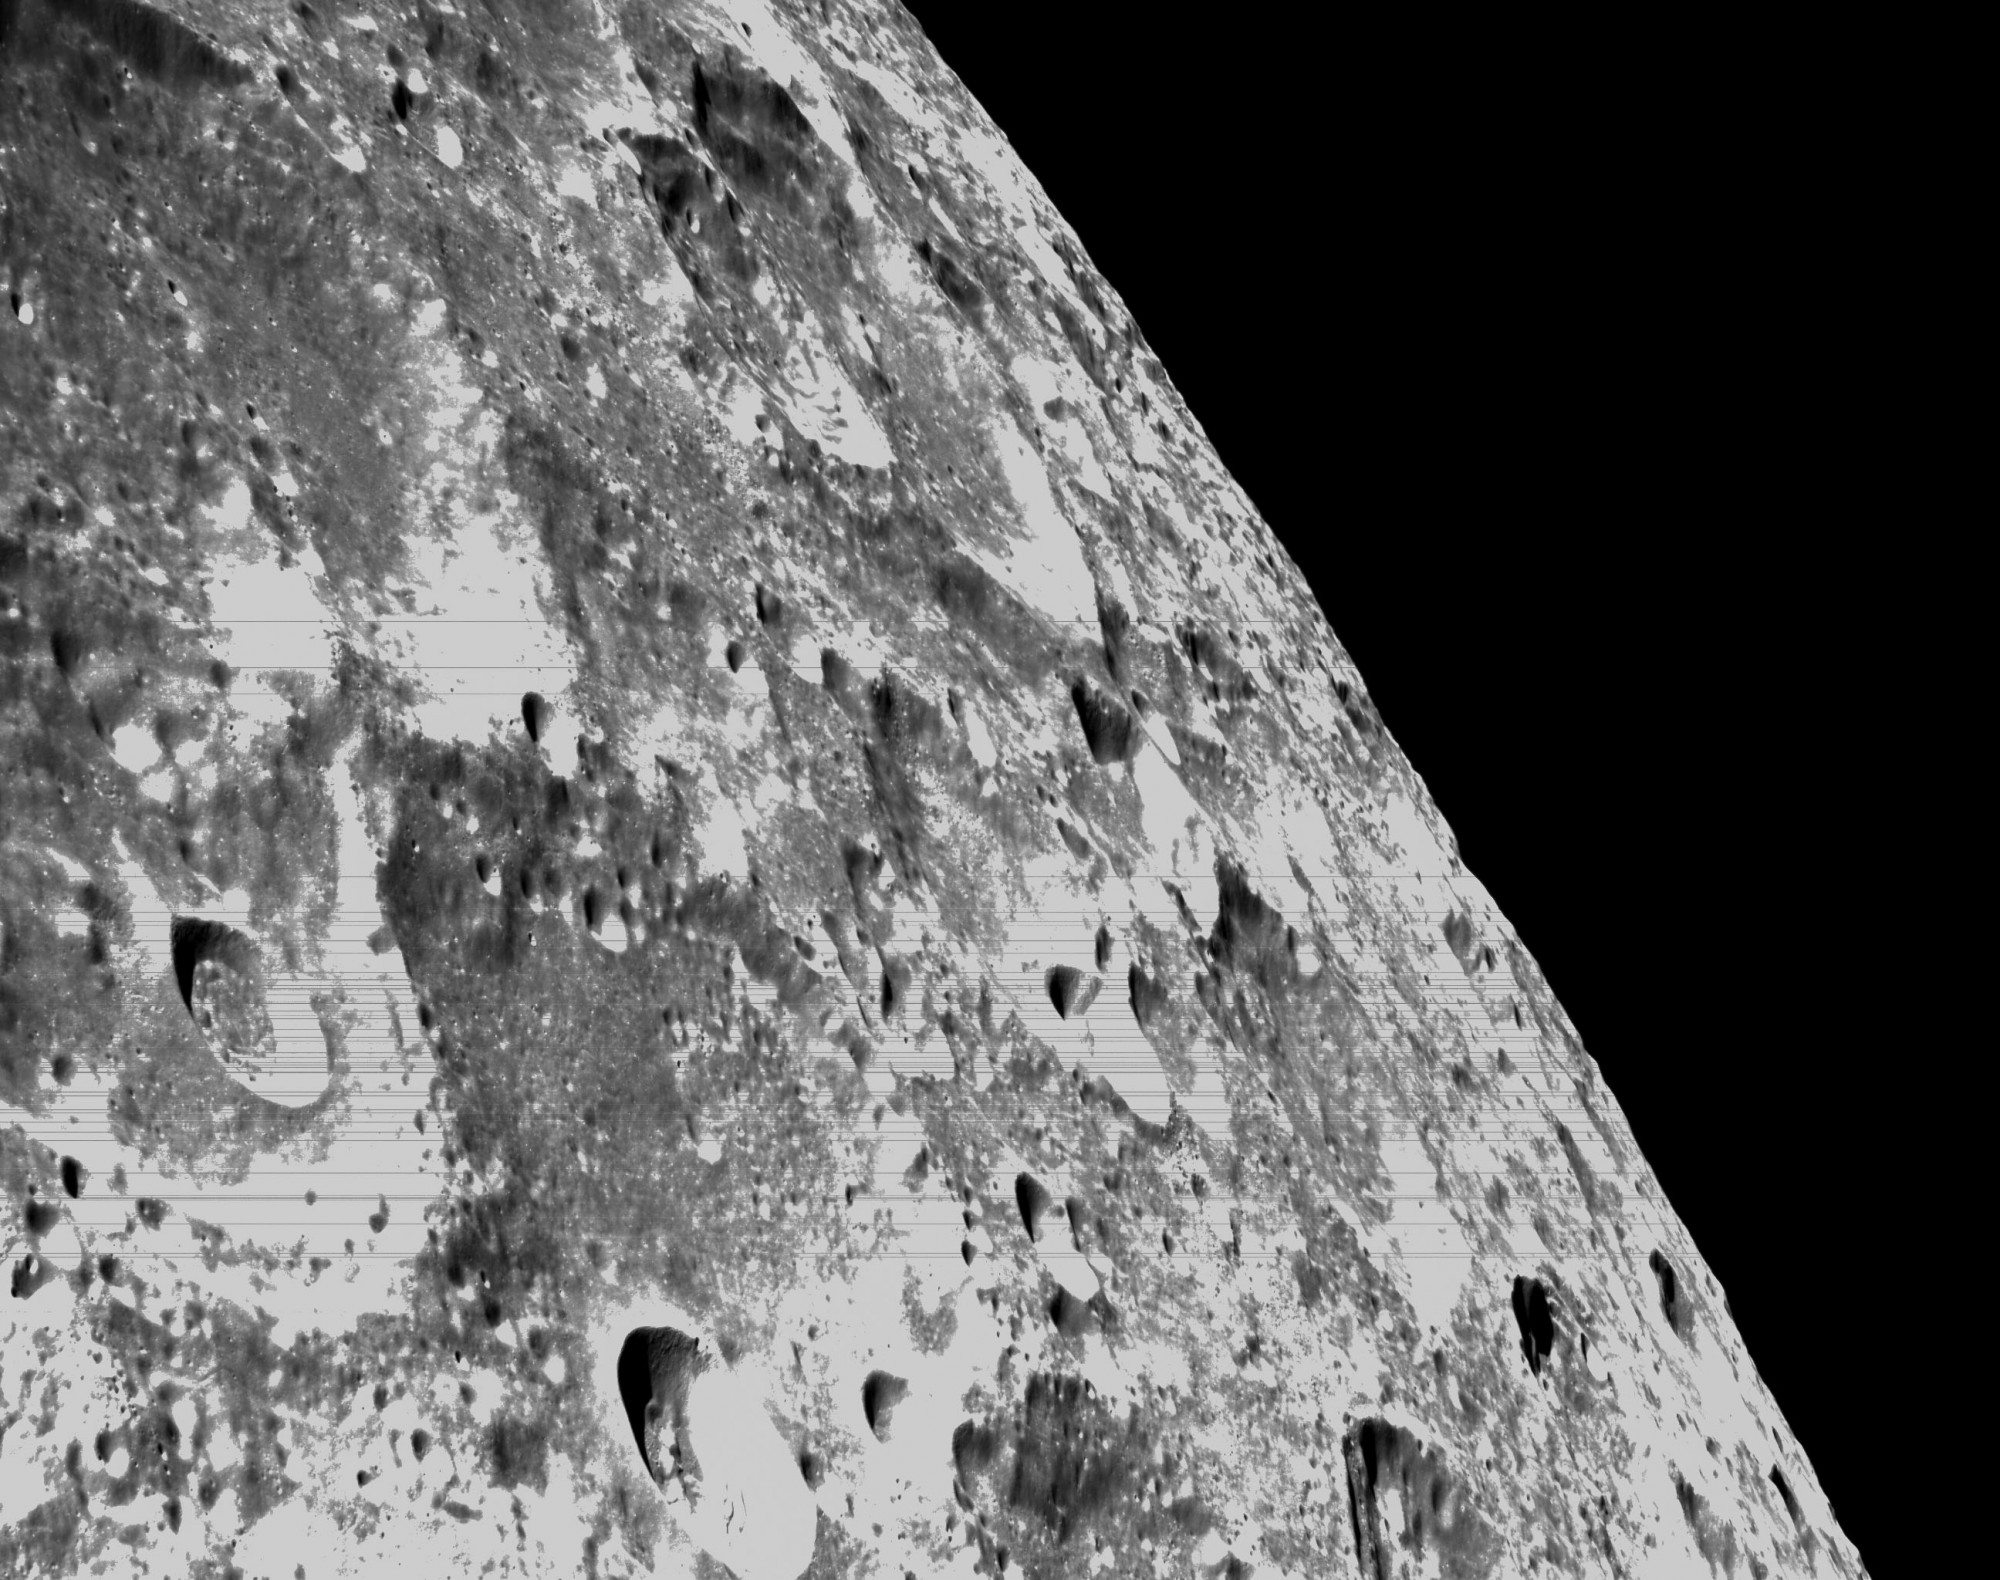 A Hold túlsó oldaláról és rögös felszínéről is küldött képeket az Orion űrhajó